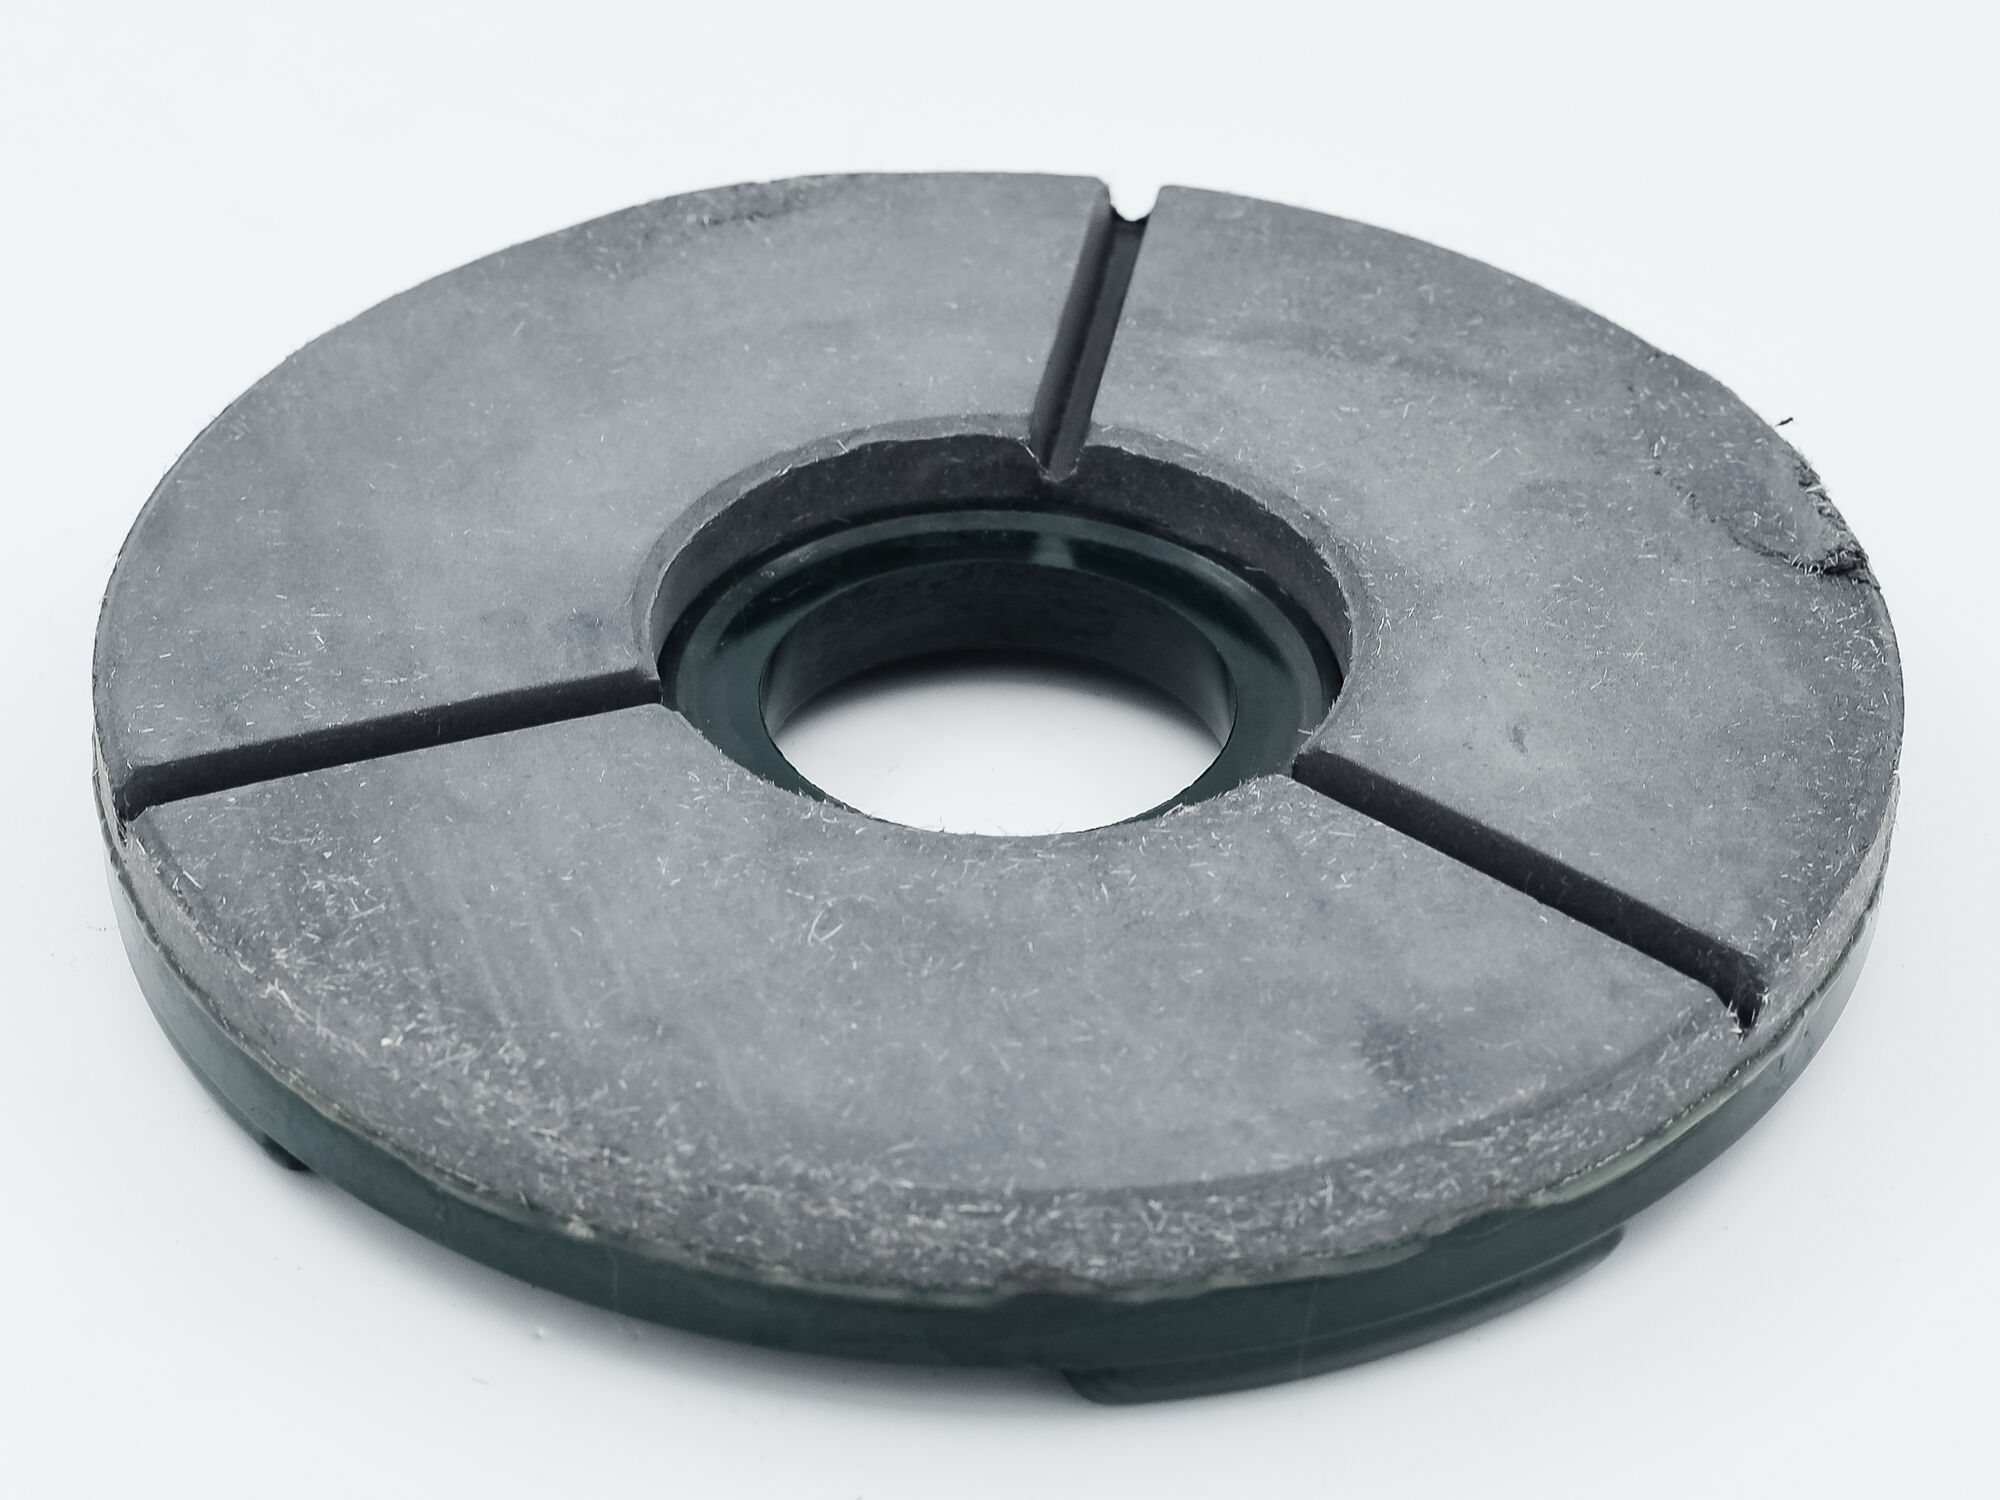 BUFF (бафф) полировальный для камня на пластиковой основе, д 200 мм